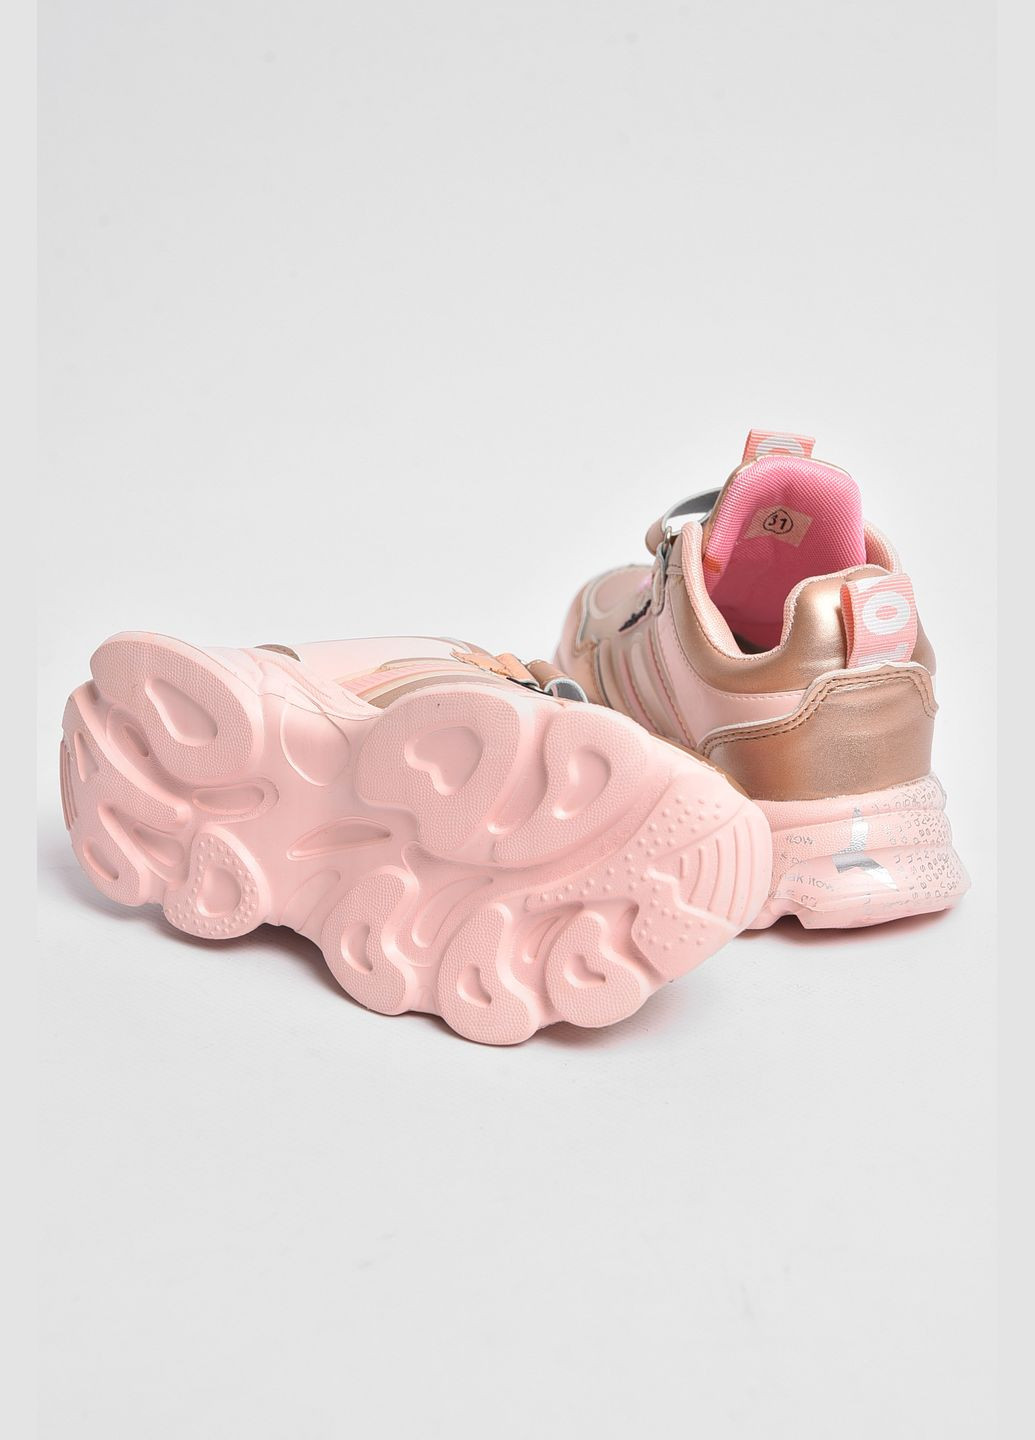 Рожеві осінні кросівки для дівчинки рожевого кольору Let's Shop